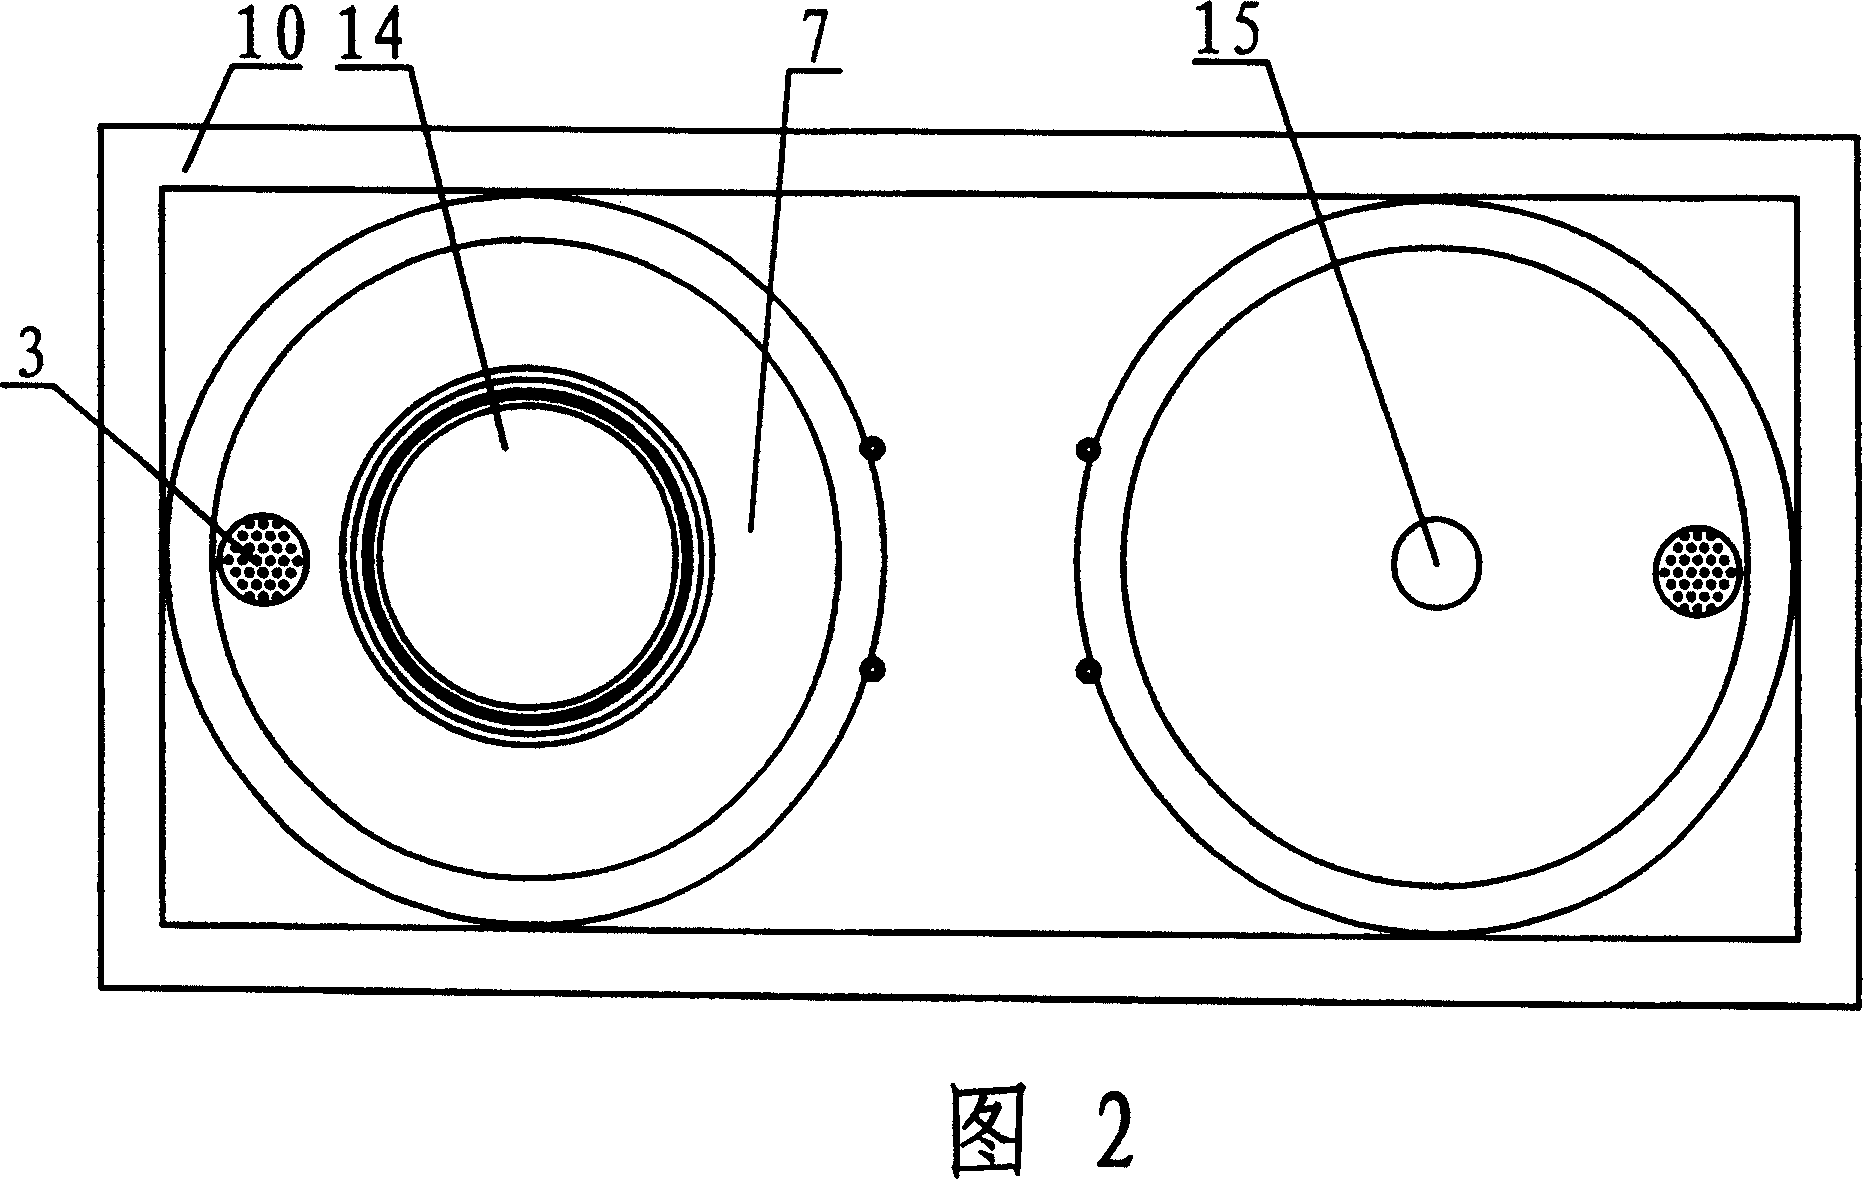 Two-site polishing machine